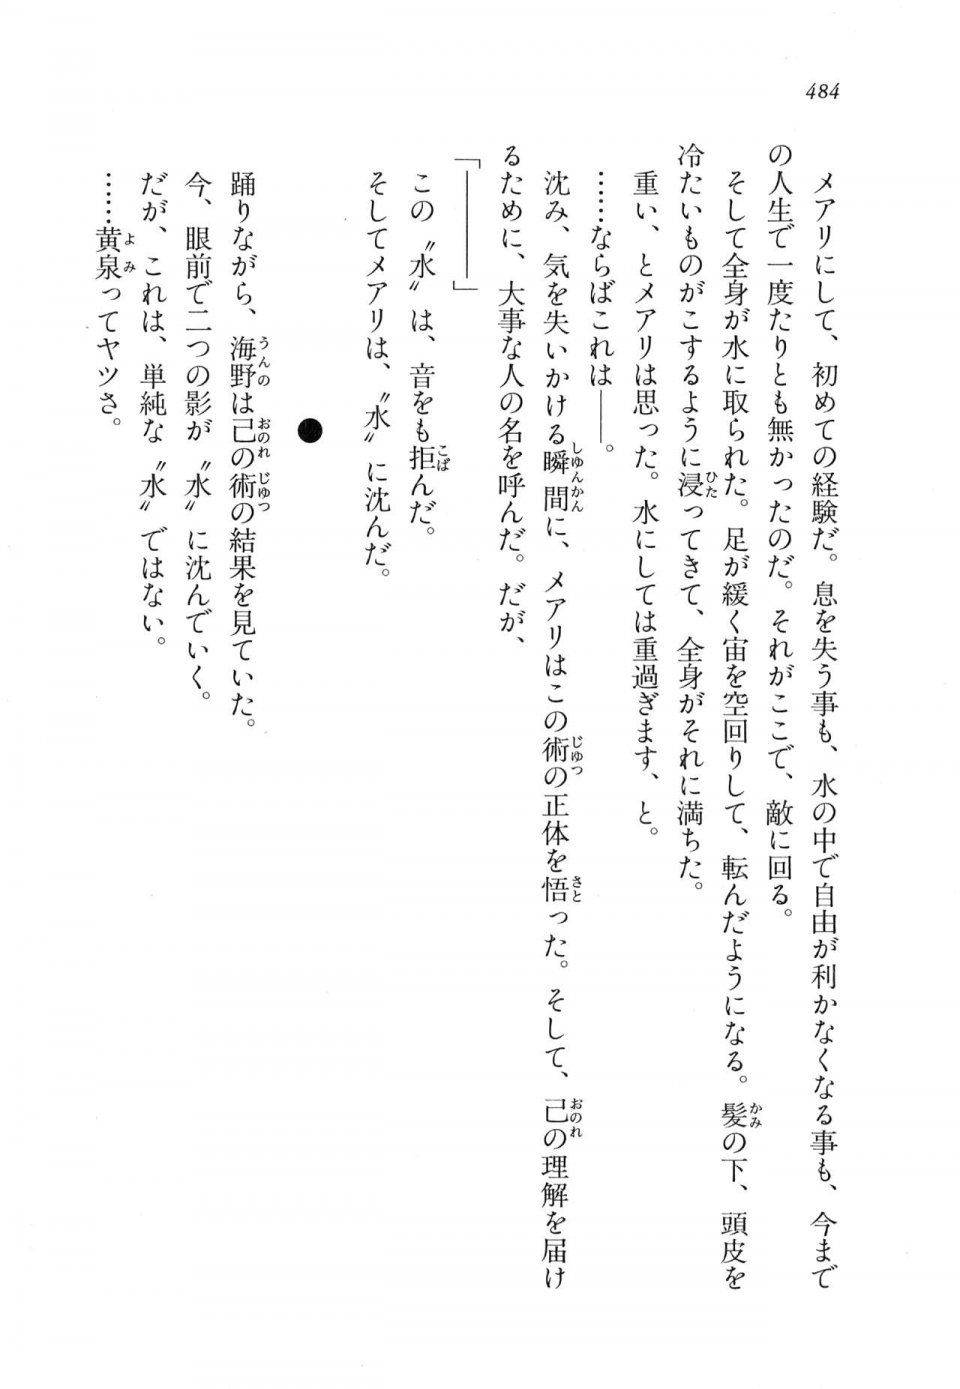 Kyoukai Senjou no Horizon LN Vol 11(5A) - Photo #484